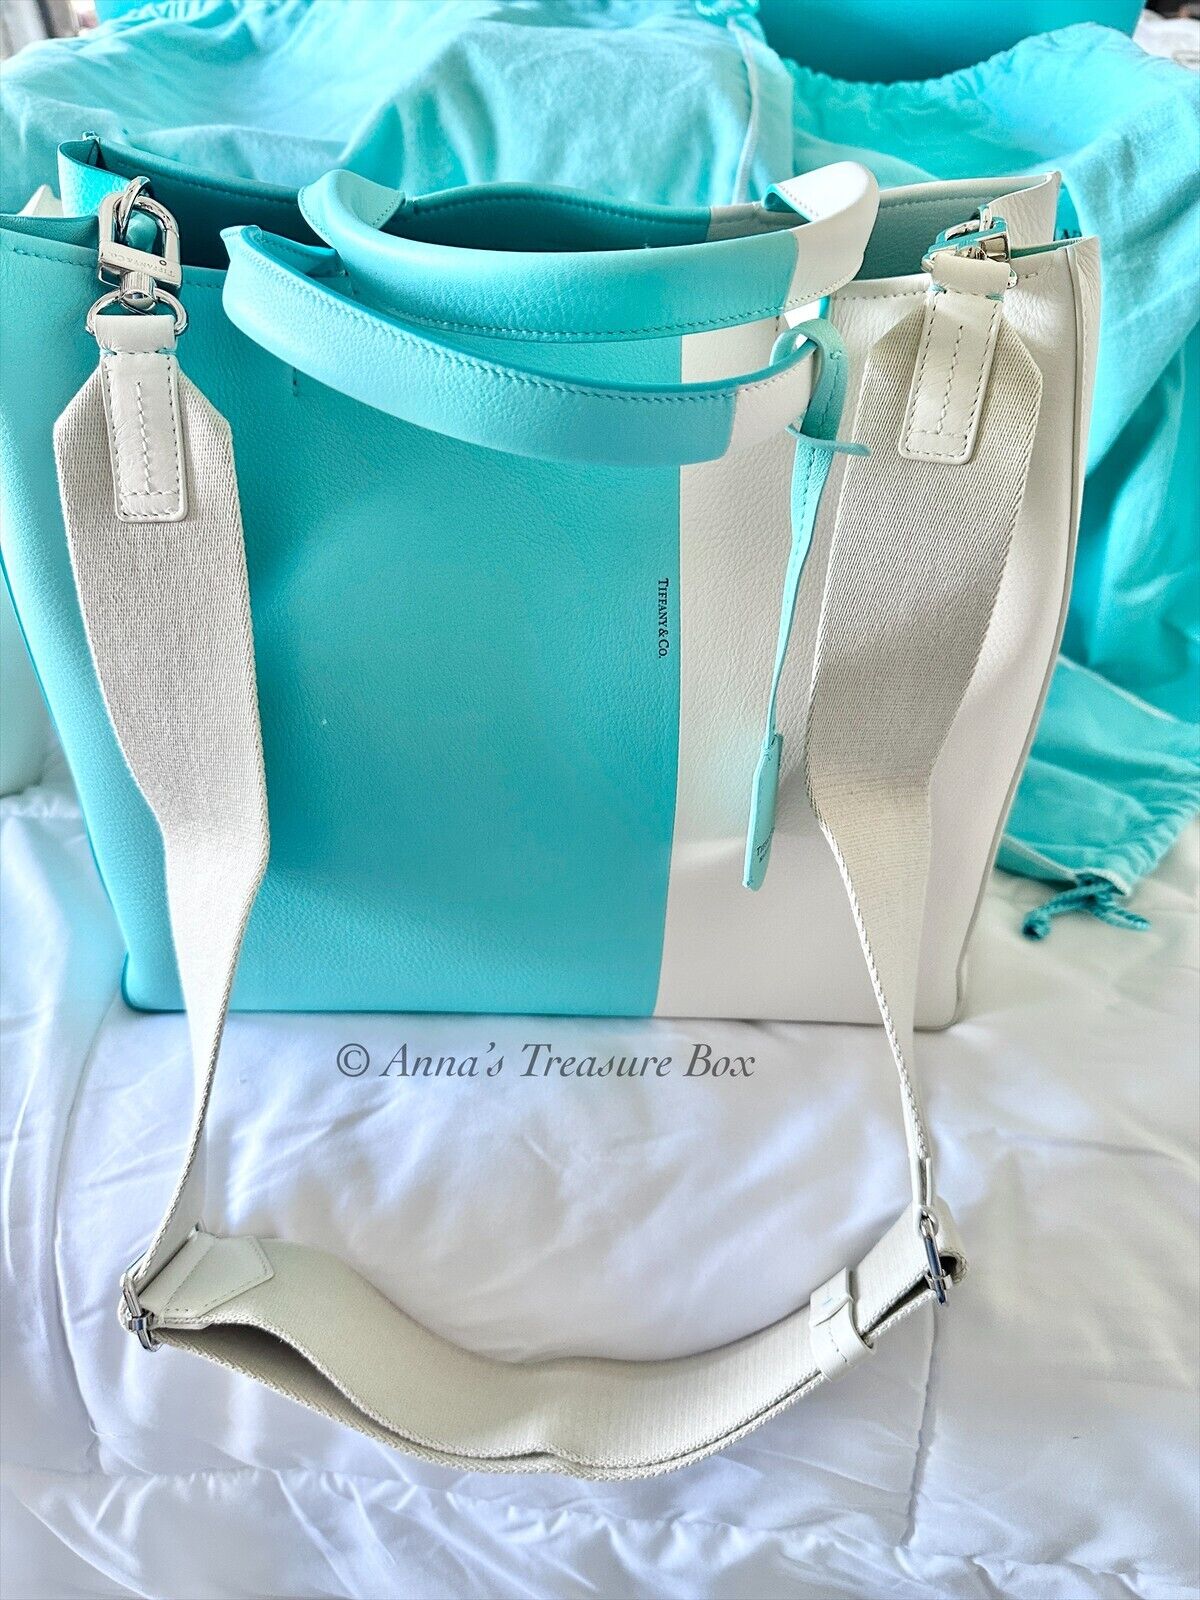 Tiffany & Co Color Block Shoulder Bag Off-white/Blue